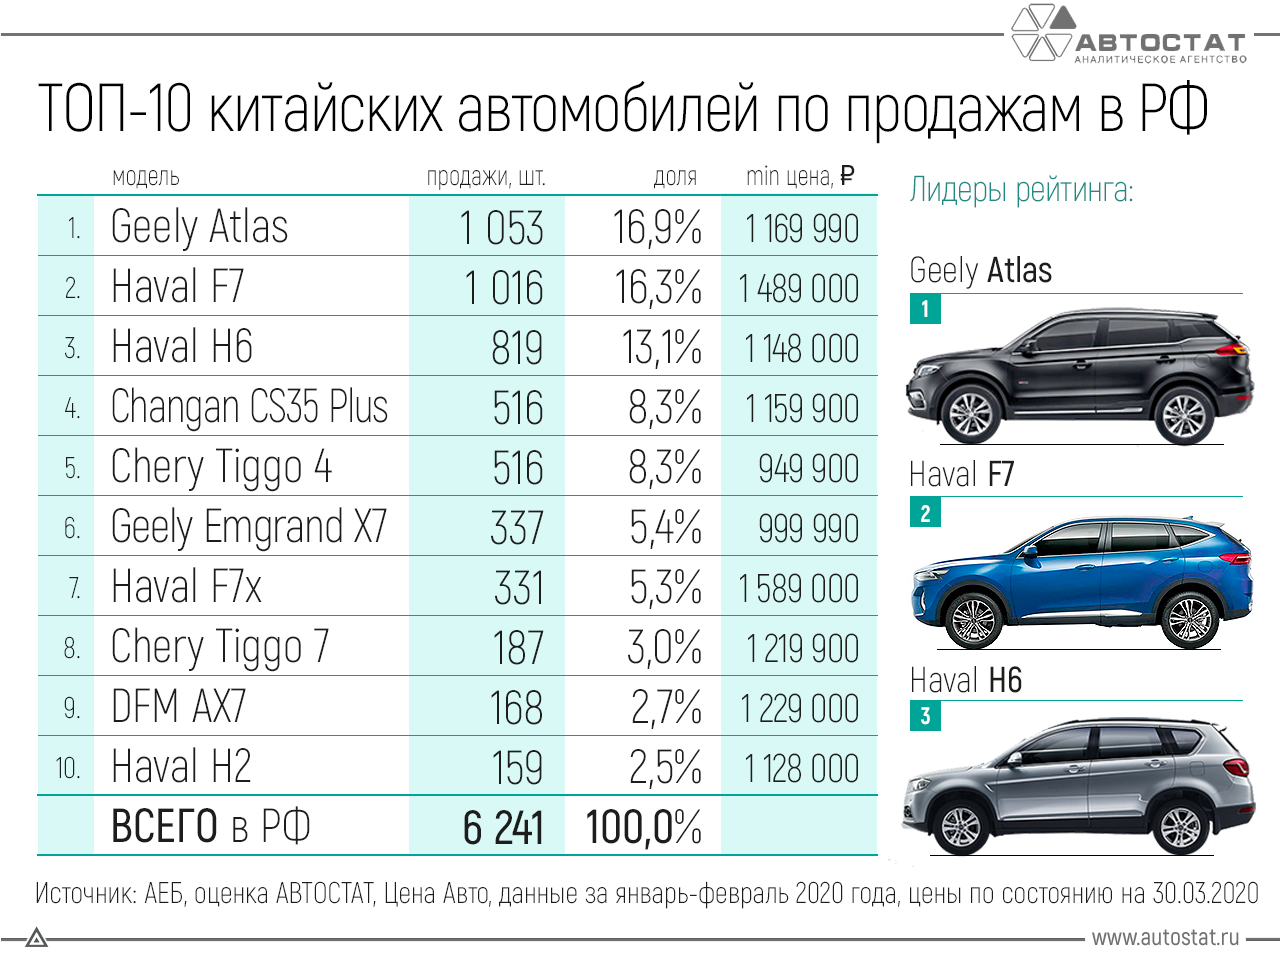 Качественная машина надежная и недорогая. Самые продаваемые автомобили. Самые продаваемые автомобили в России 2020. Самая продаваемая марка авто. Самая продаваемая машина.